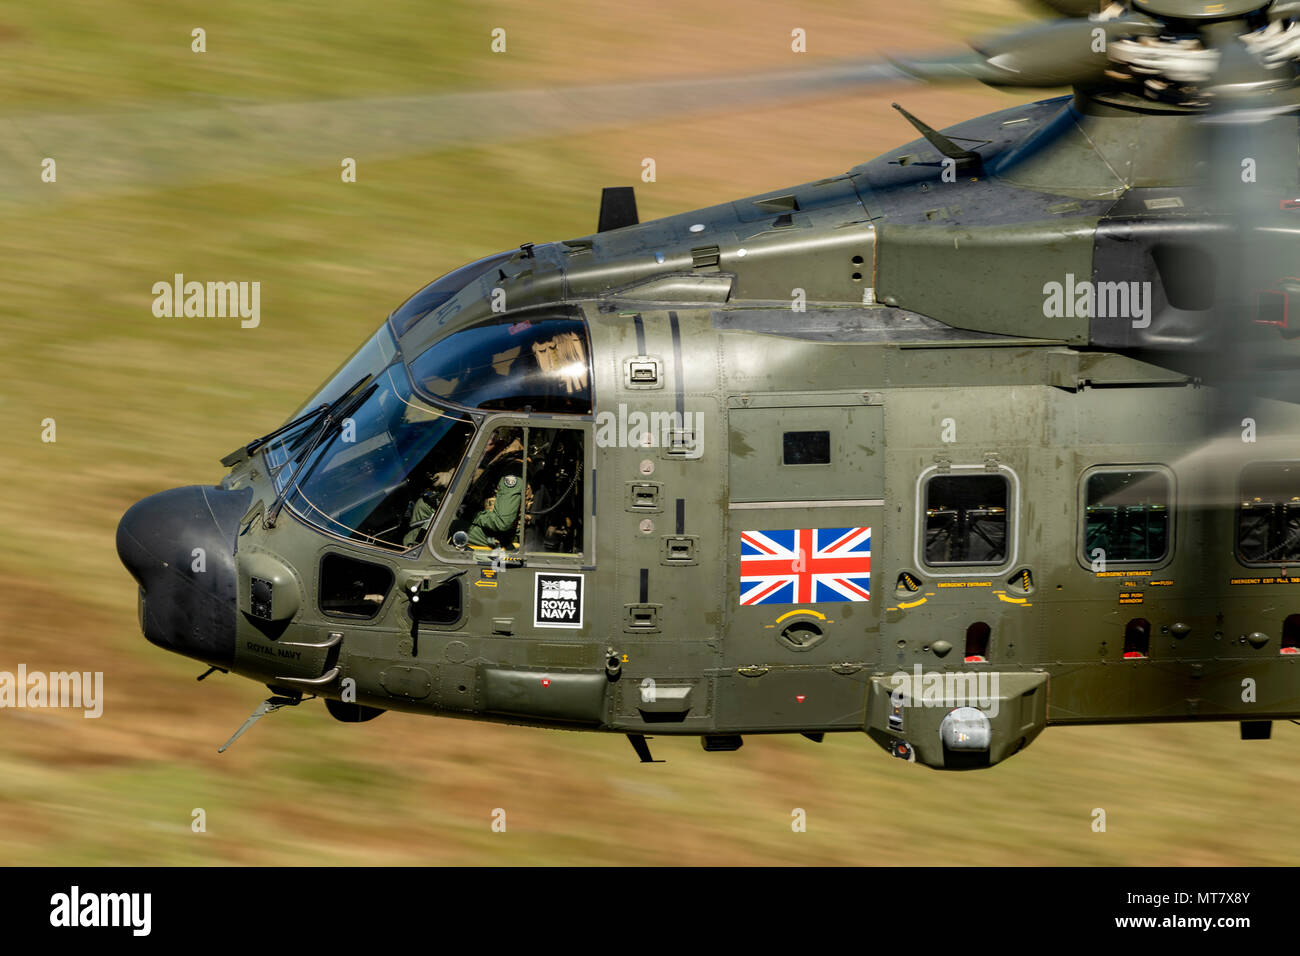 MK3Merlin de la Marine royale un hélicoptère Commando de Yeovilton, volant bas niveau dans la boucle de Mach Banque D'Images